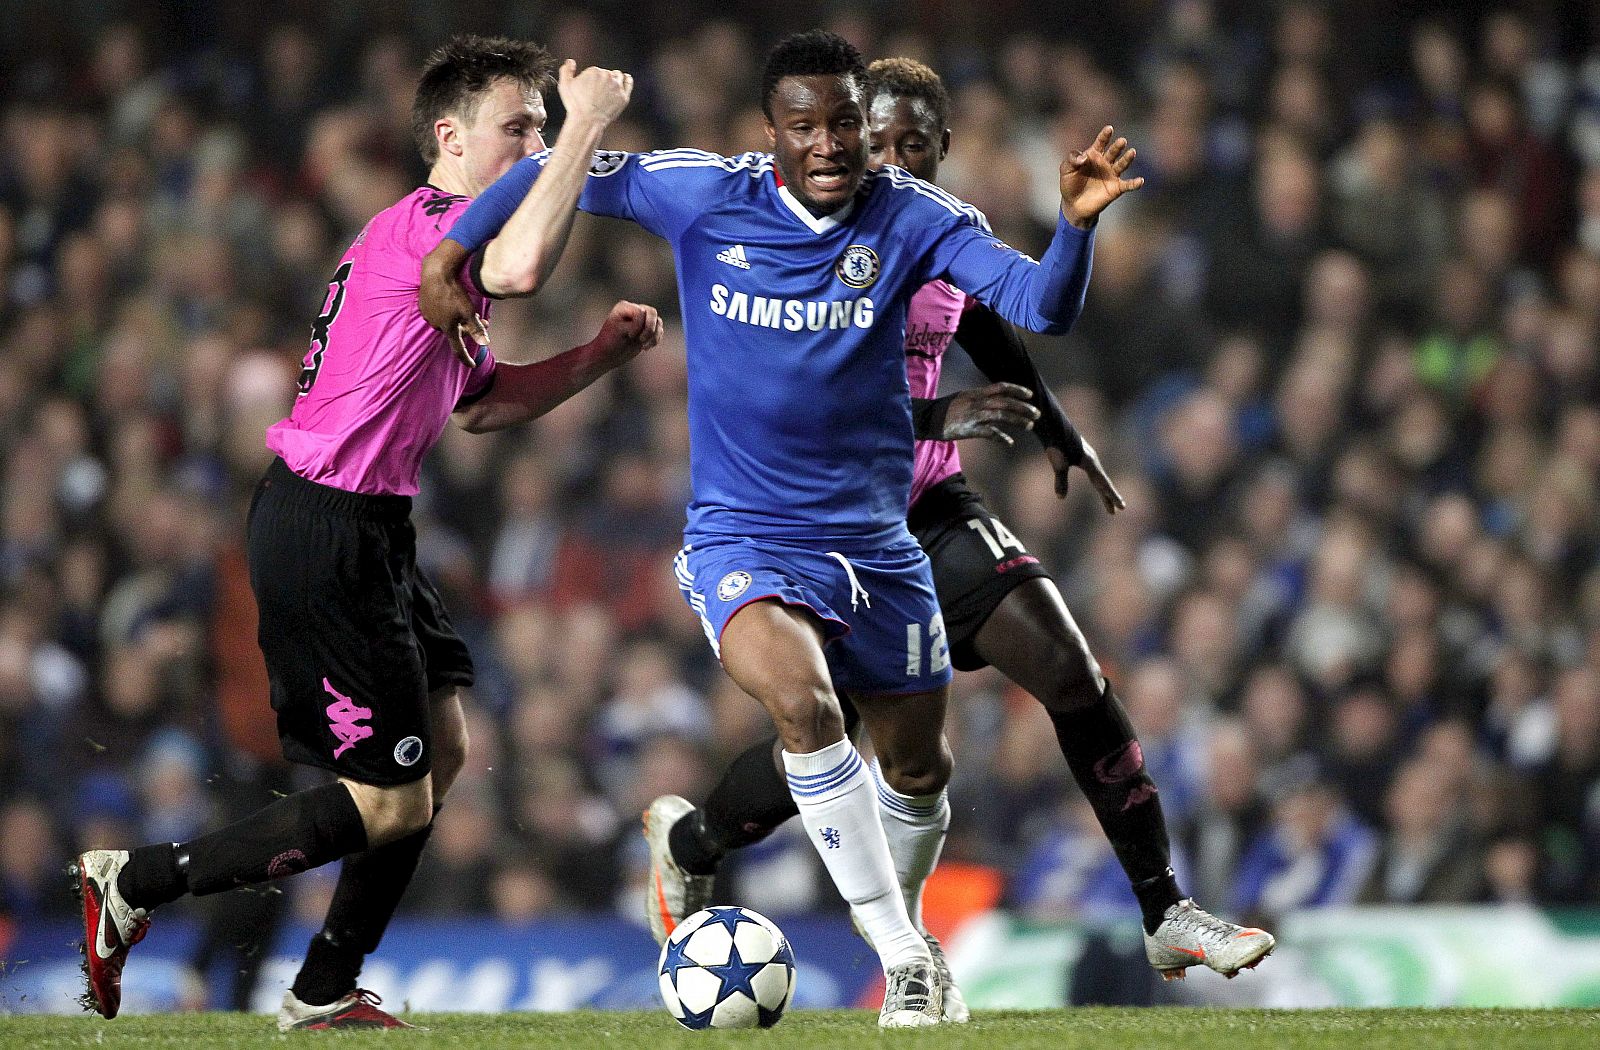 El jugador del Chelsea Obi Mikel intenta controlar el balón entre William Kvist y Dame N'Doye, del FC Copenhague.